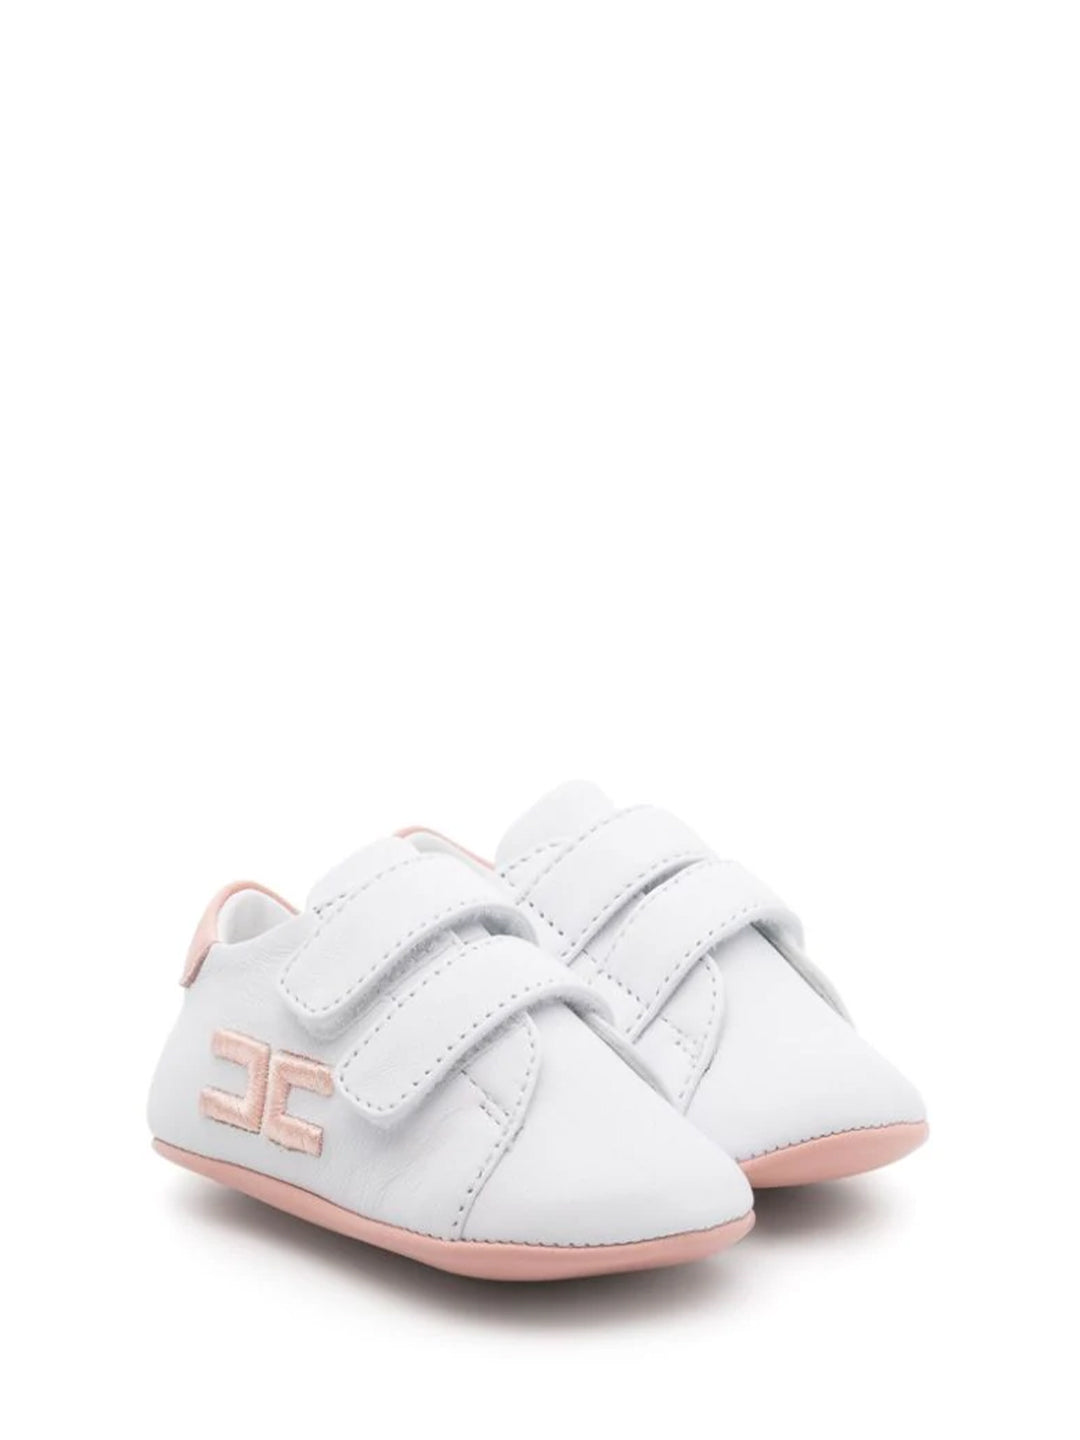 Elisabetta Franchi sneakers neonato bianco con tab rosa